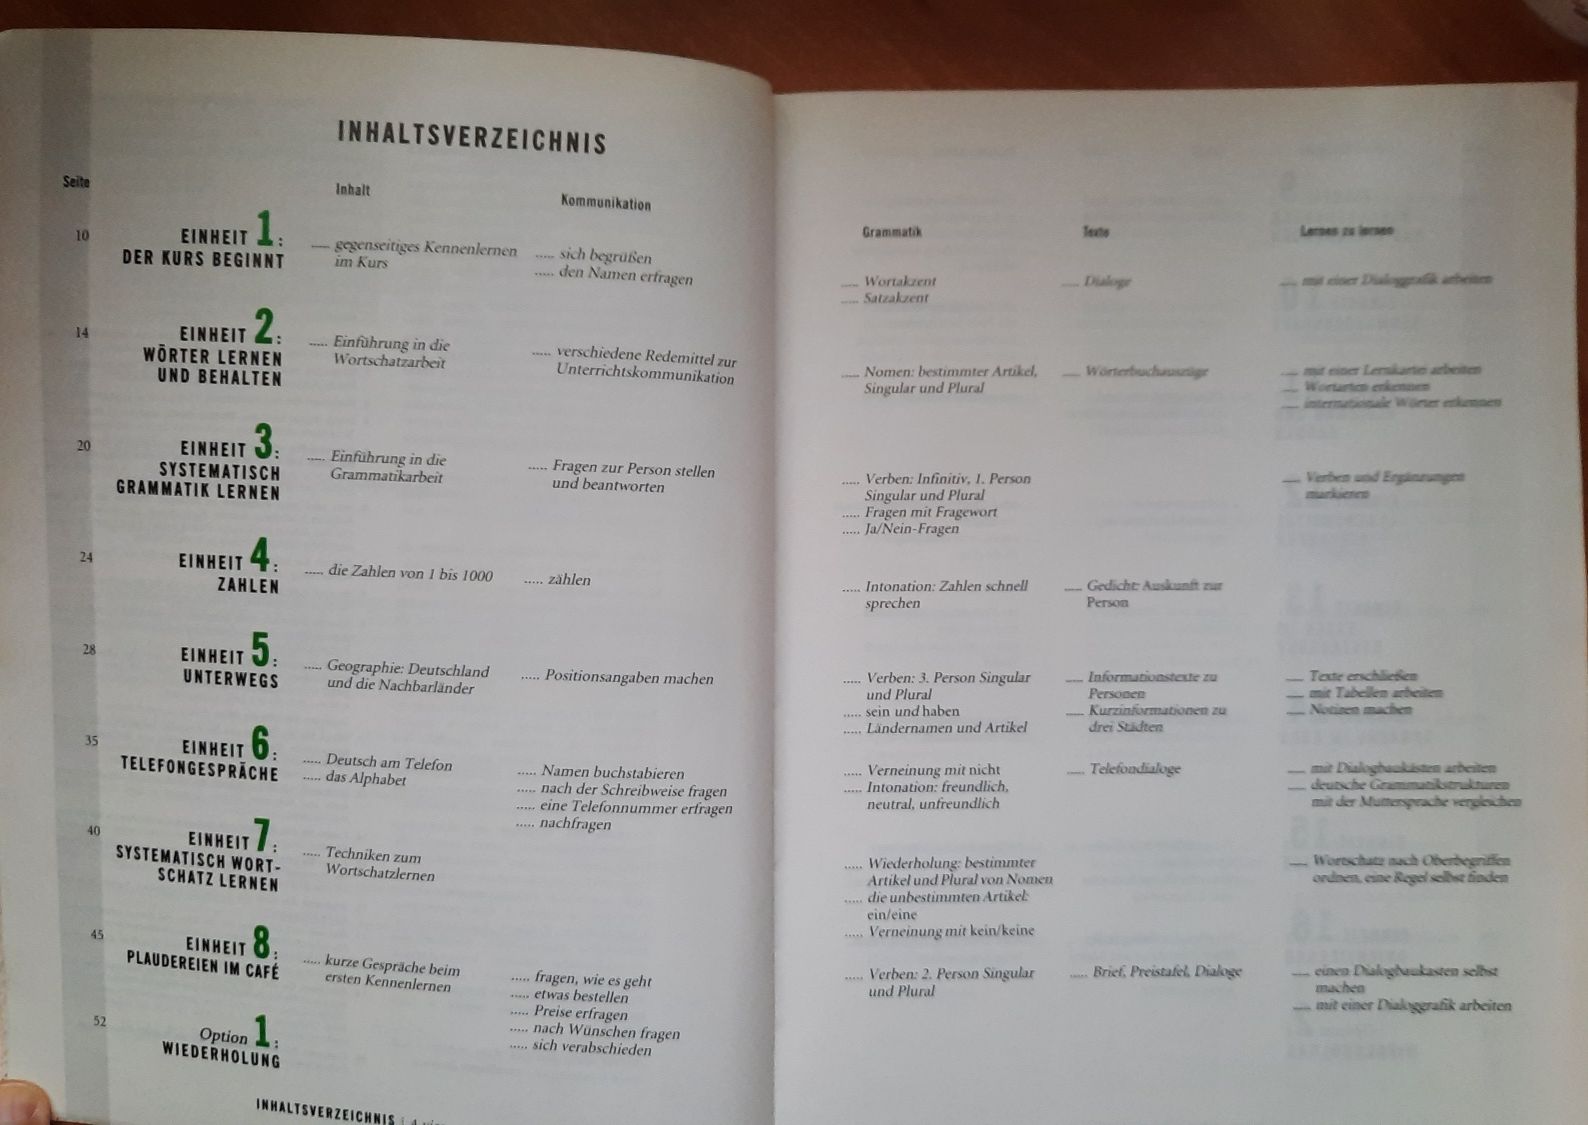 Język niemiecki podręcznik eurolingia Deutsch 1